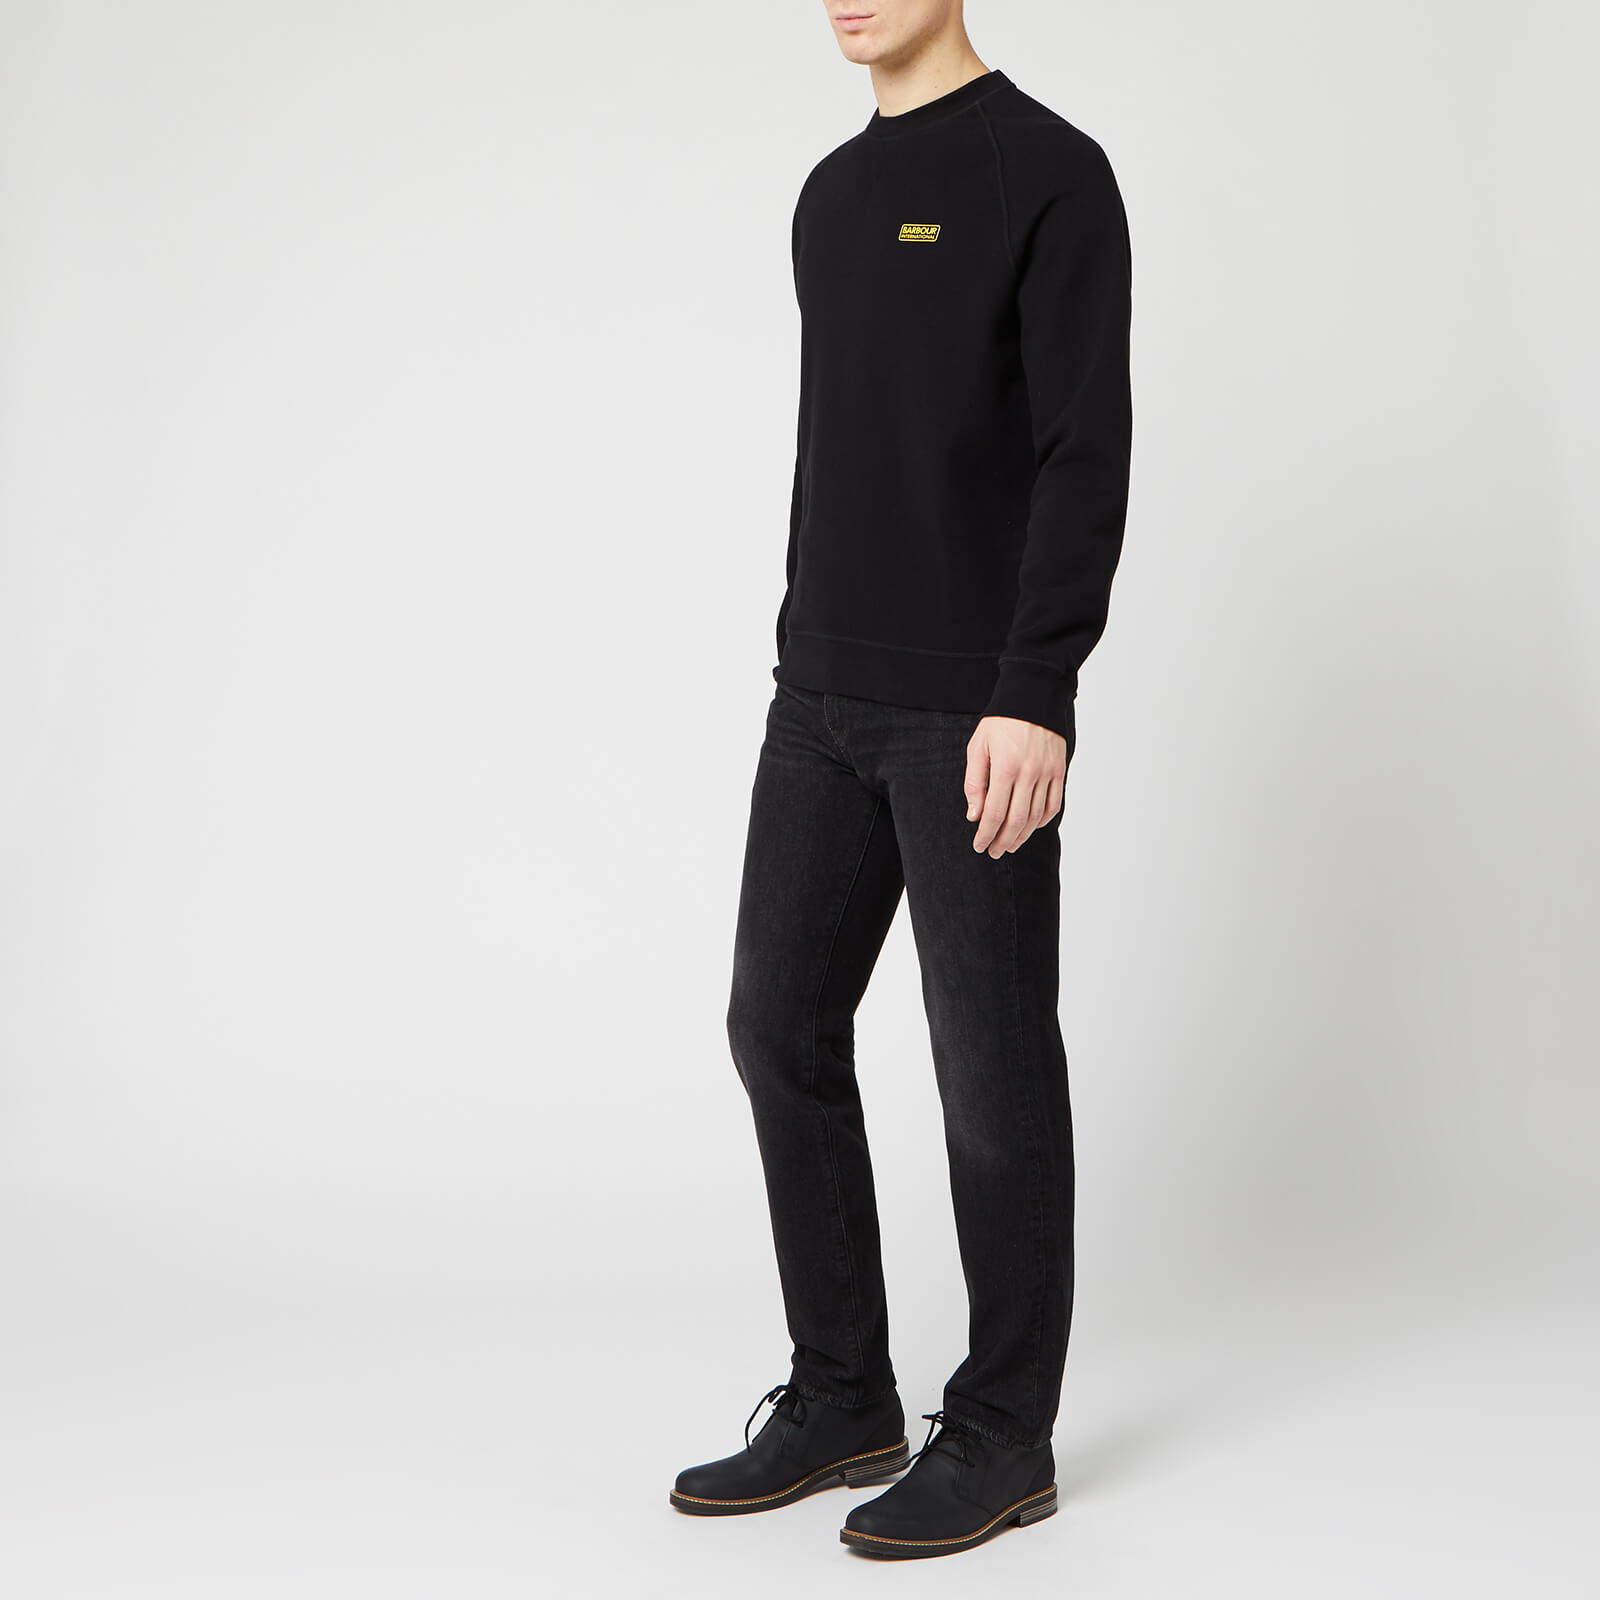 Barbour International Men's Essential Crew Sweatshirt - Black - S